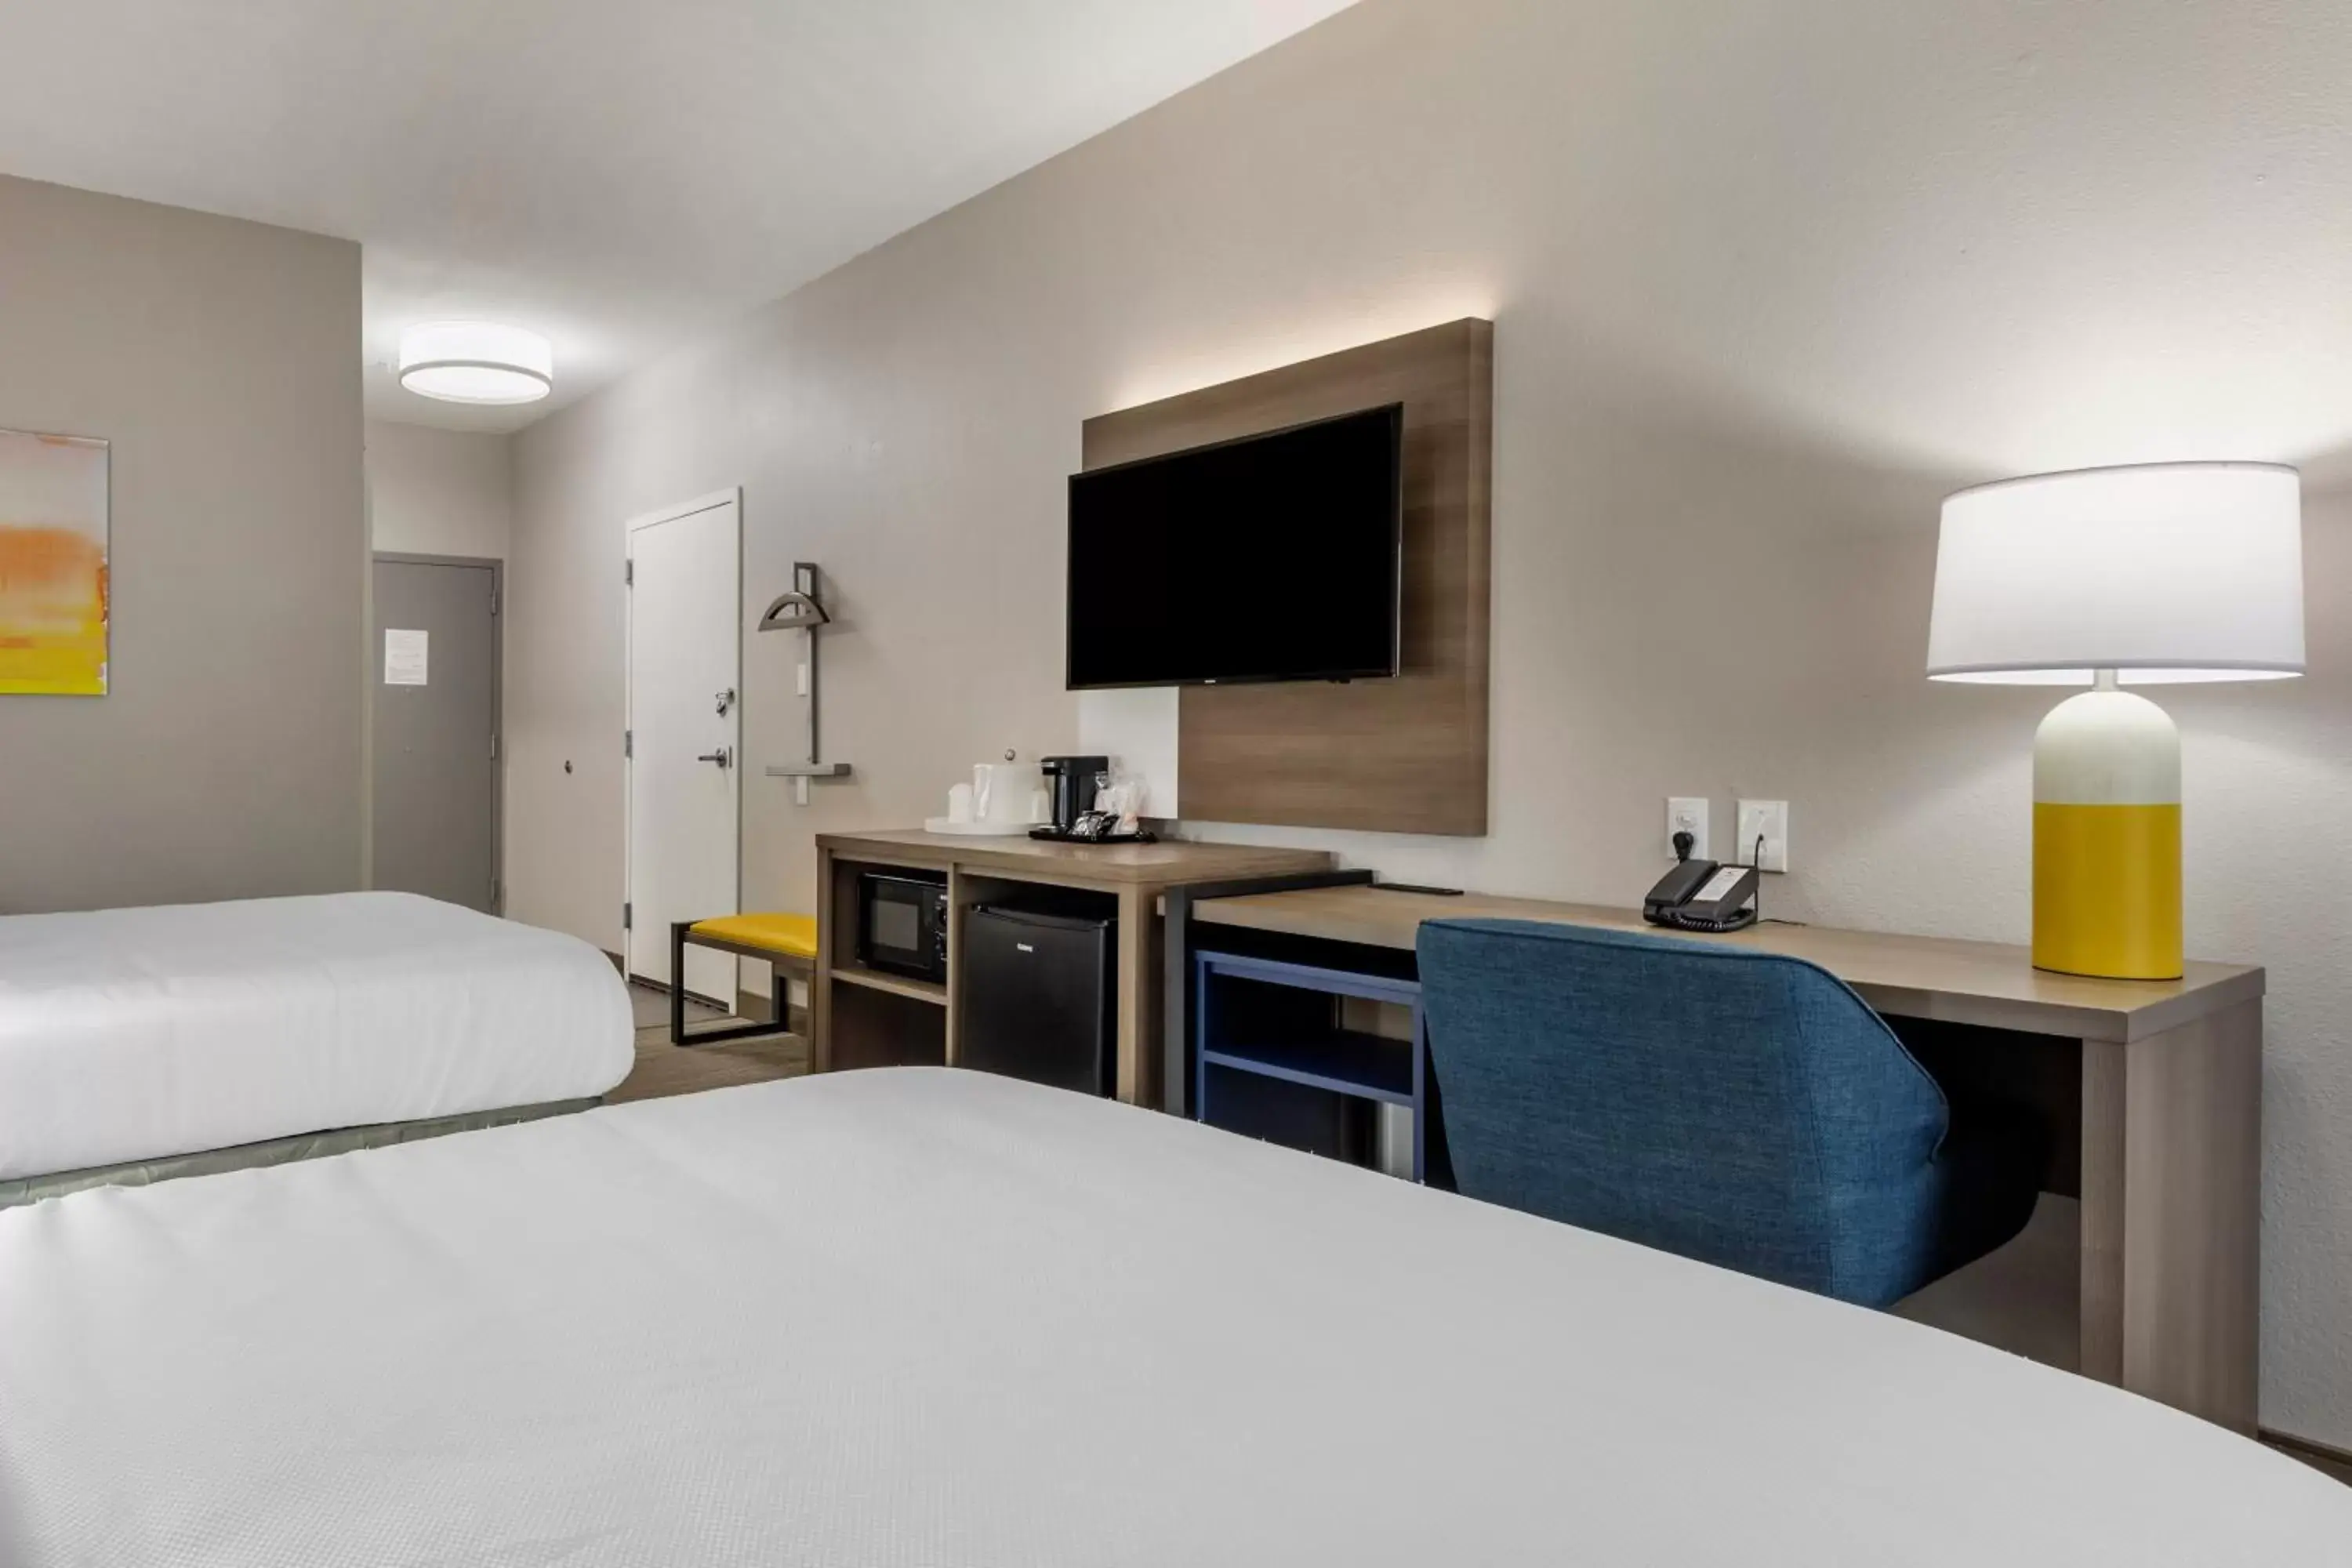 Bedroom, Bed in Comfort Inn - Weatherford